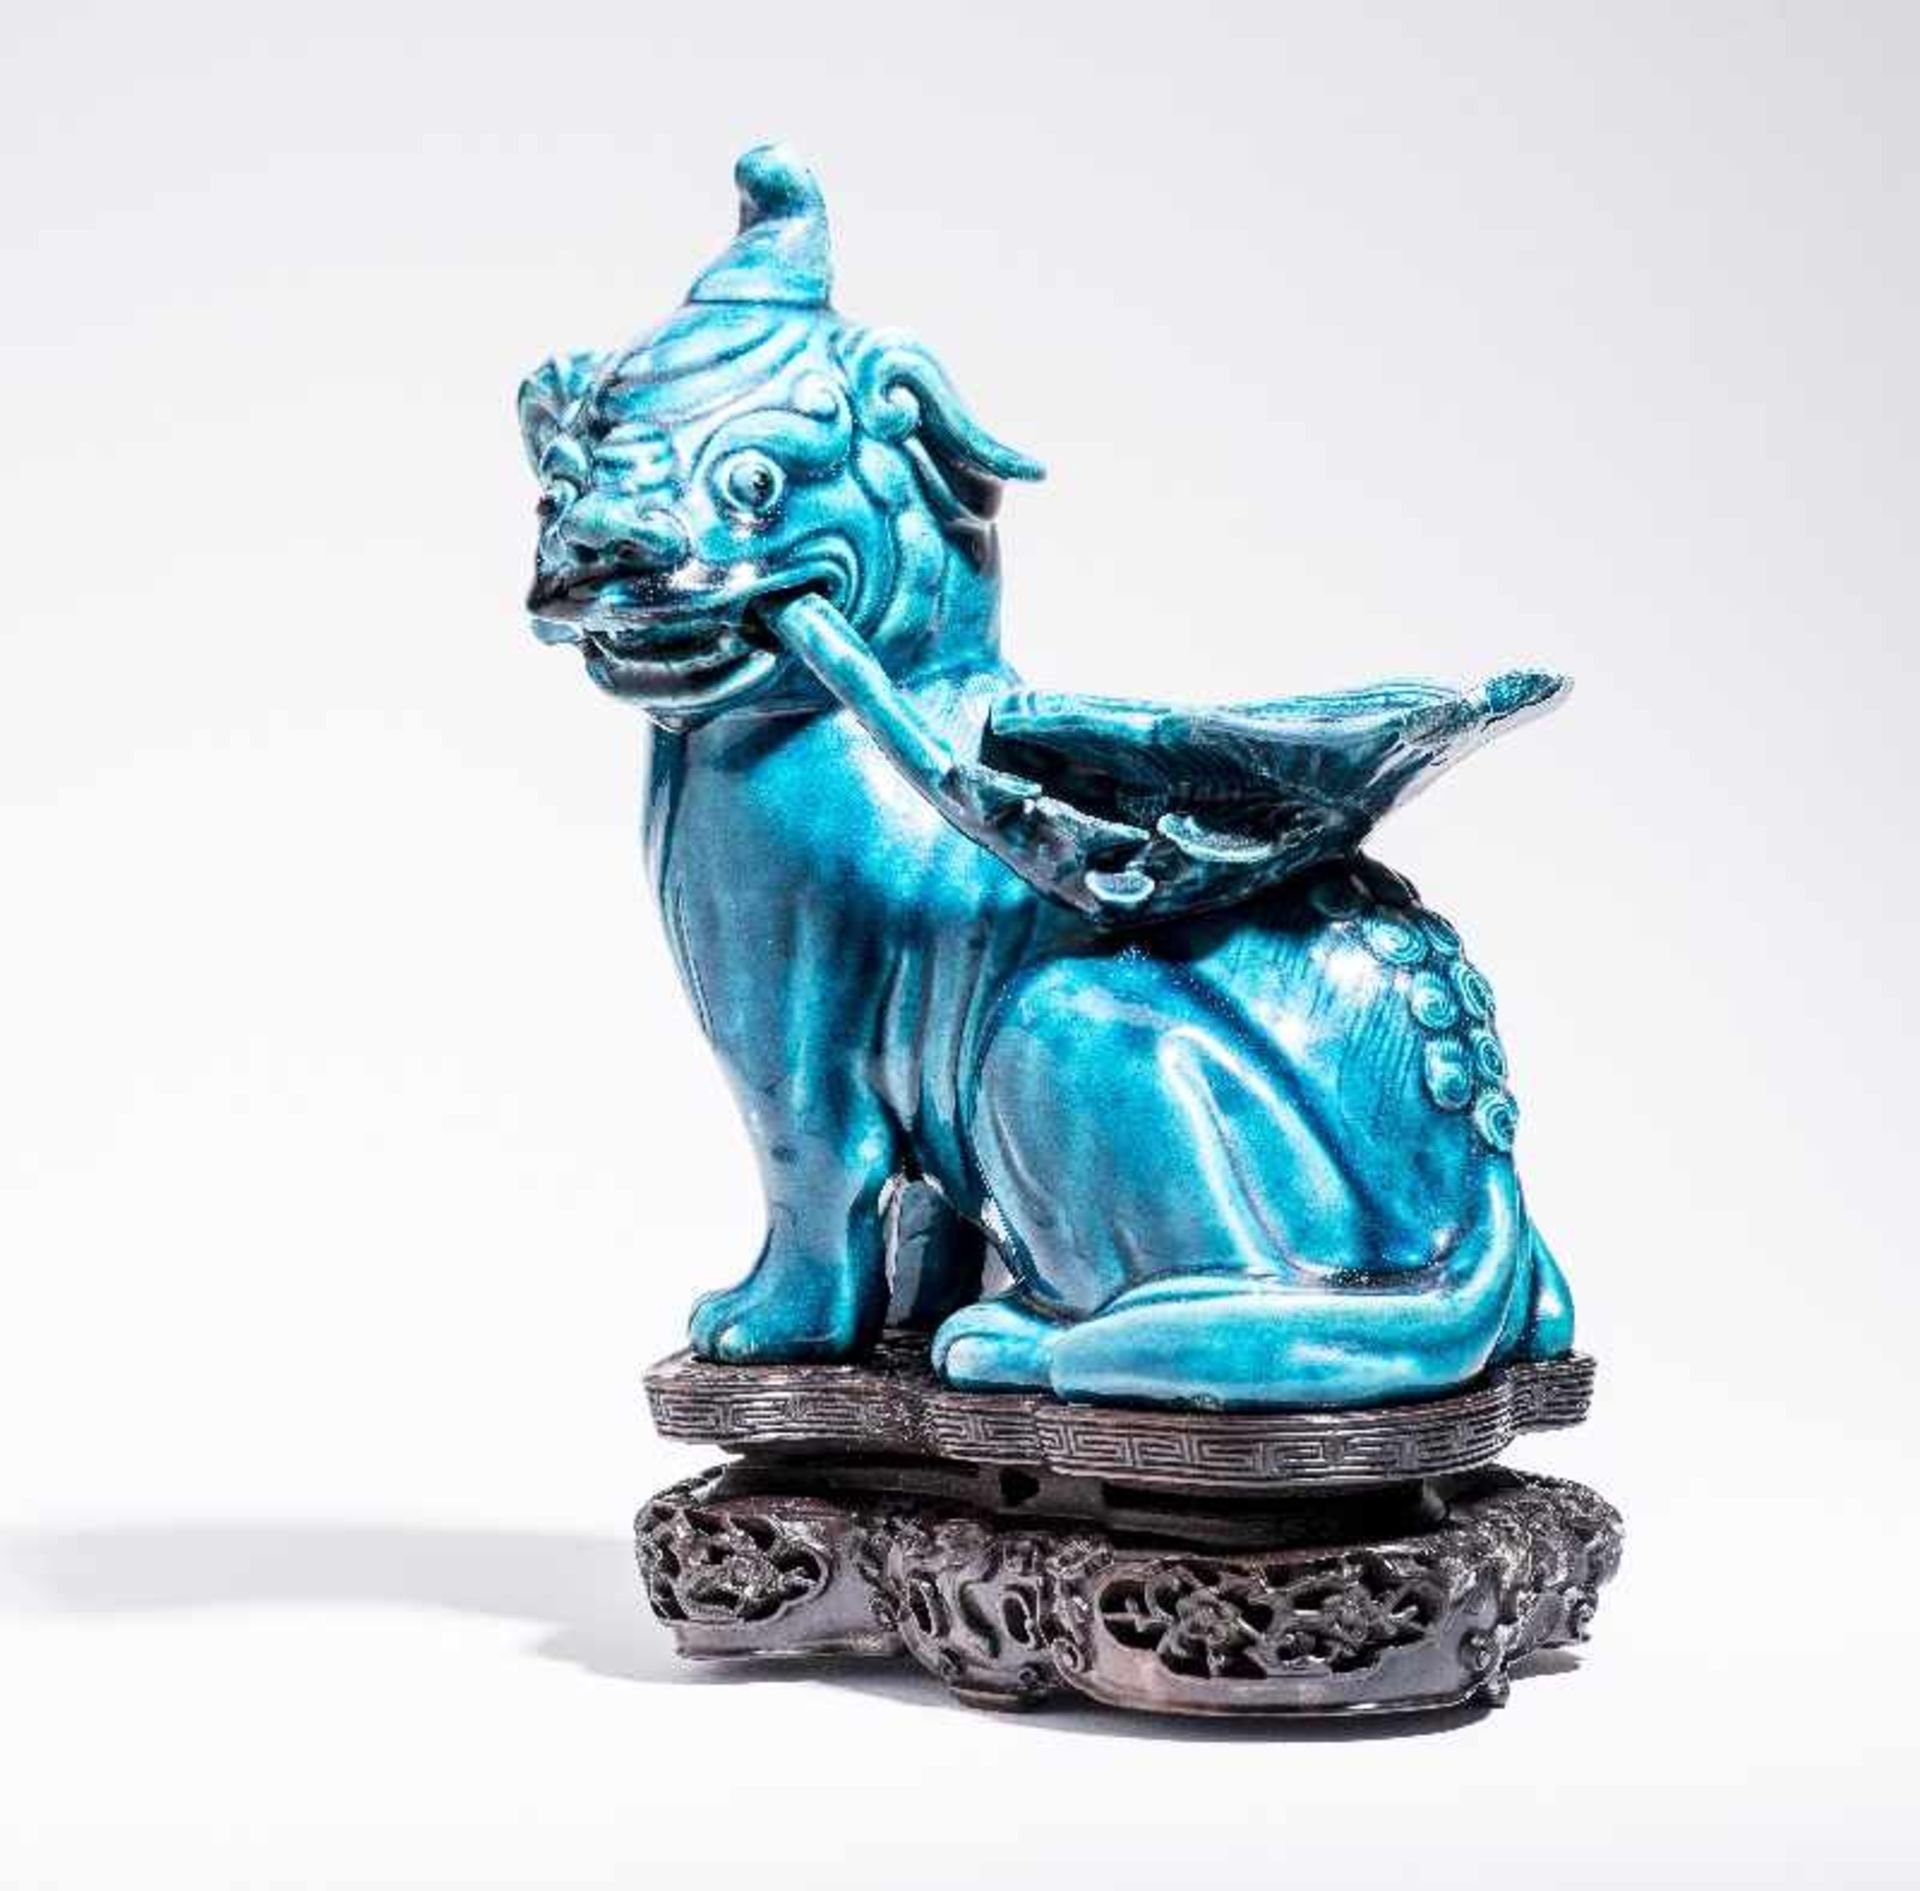 SITZENDES EINHORNPorzellan. China, Qing-Dynastie, 18. Jh. An dieser Porzellanskulptur des - Image 6 of 7